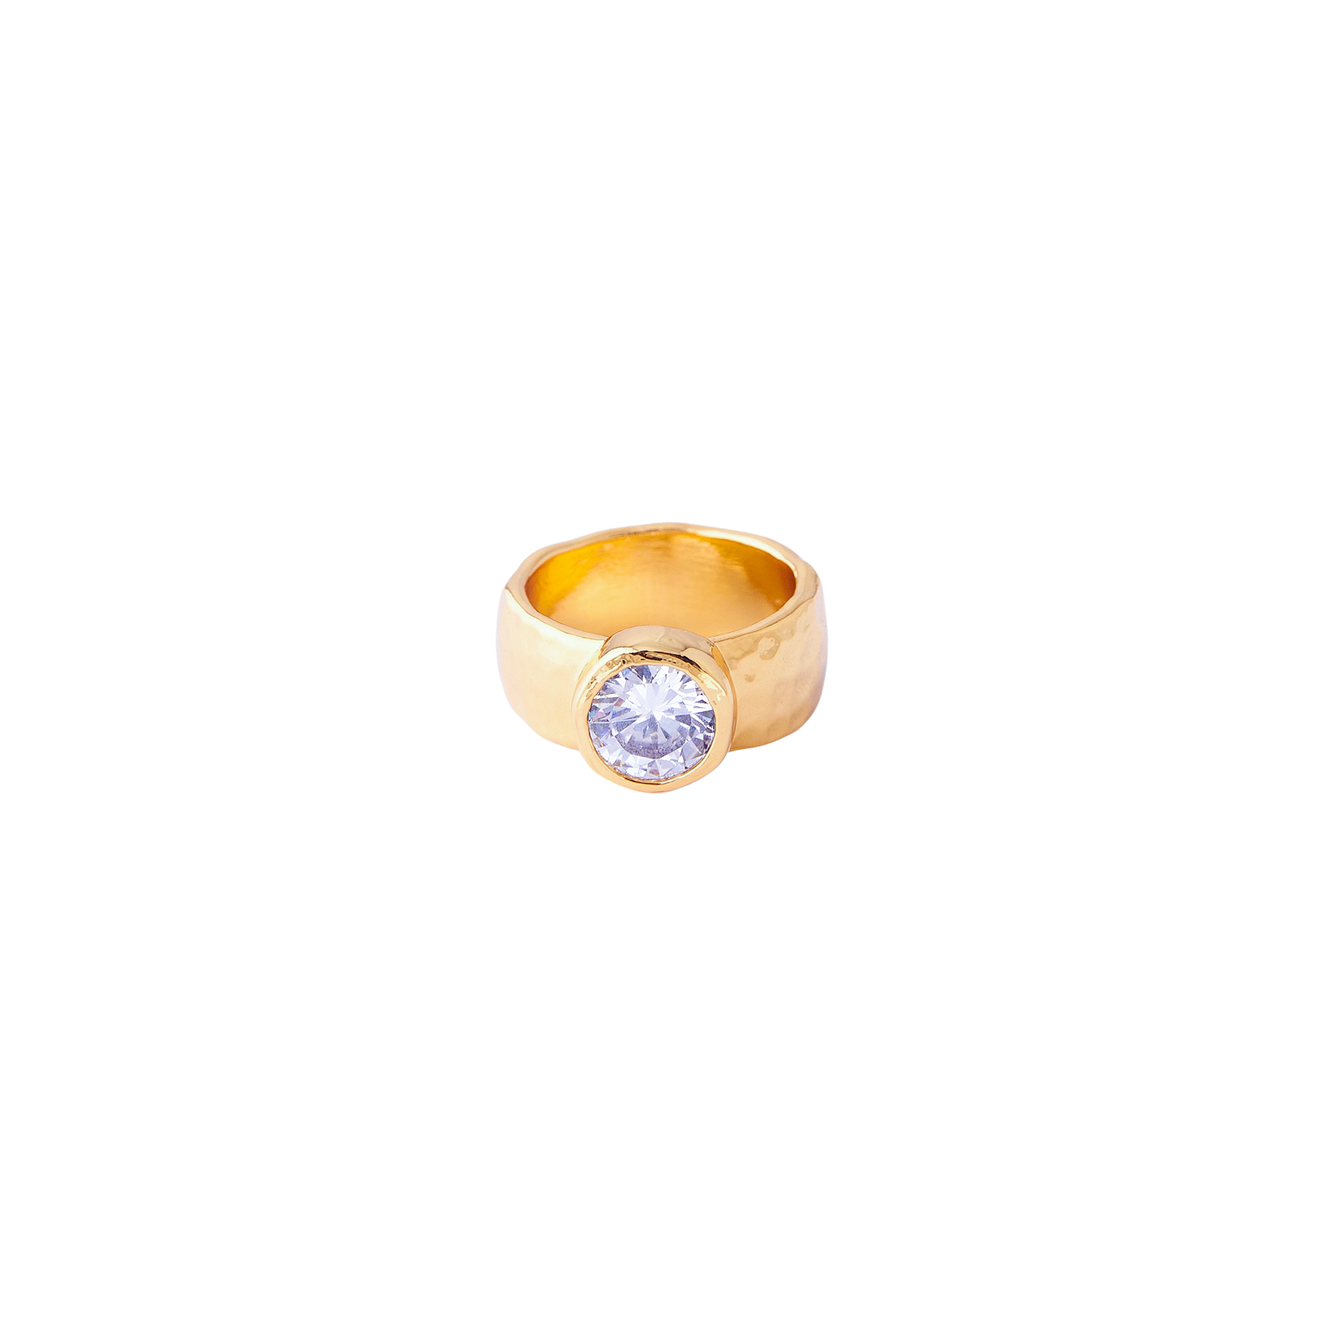 Herald Percy Золотистое кольцо с крупным кристаллом herald percy золотистая цепочка с подвеской сердцем с кристаллом